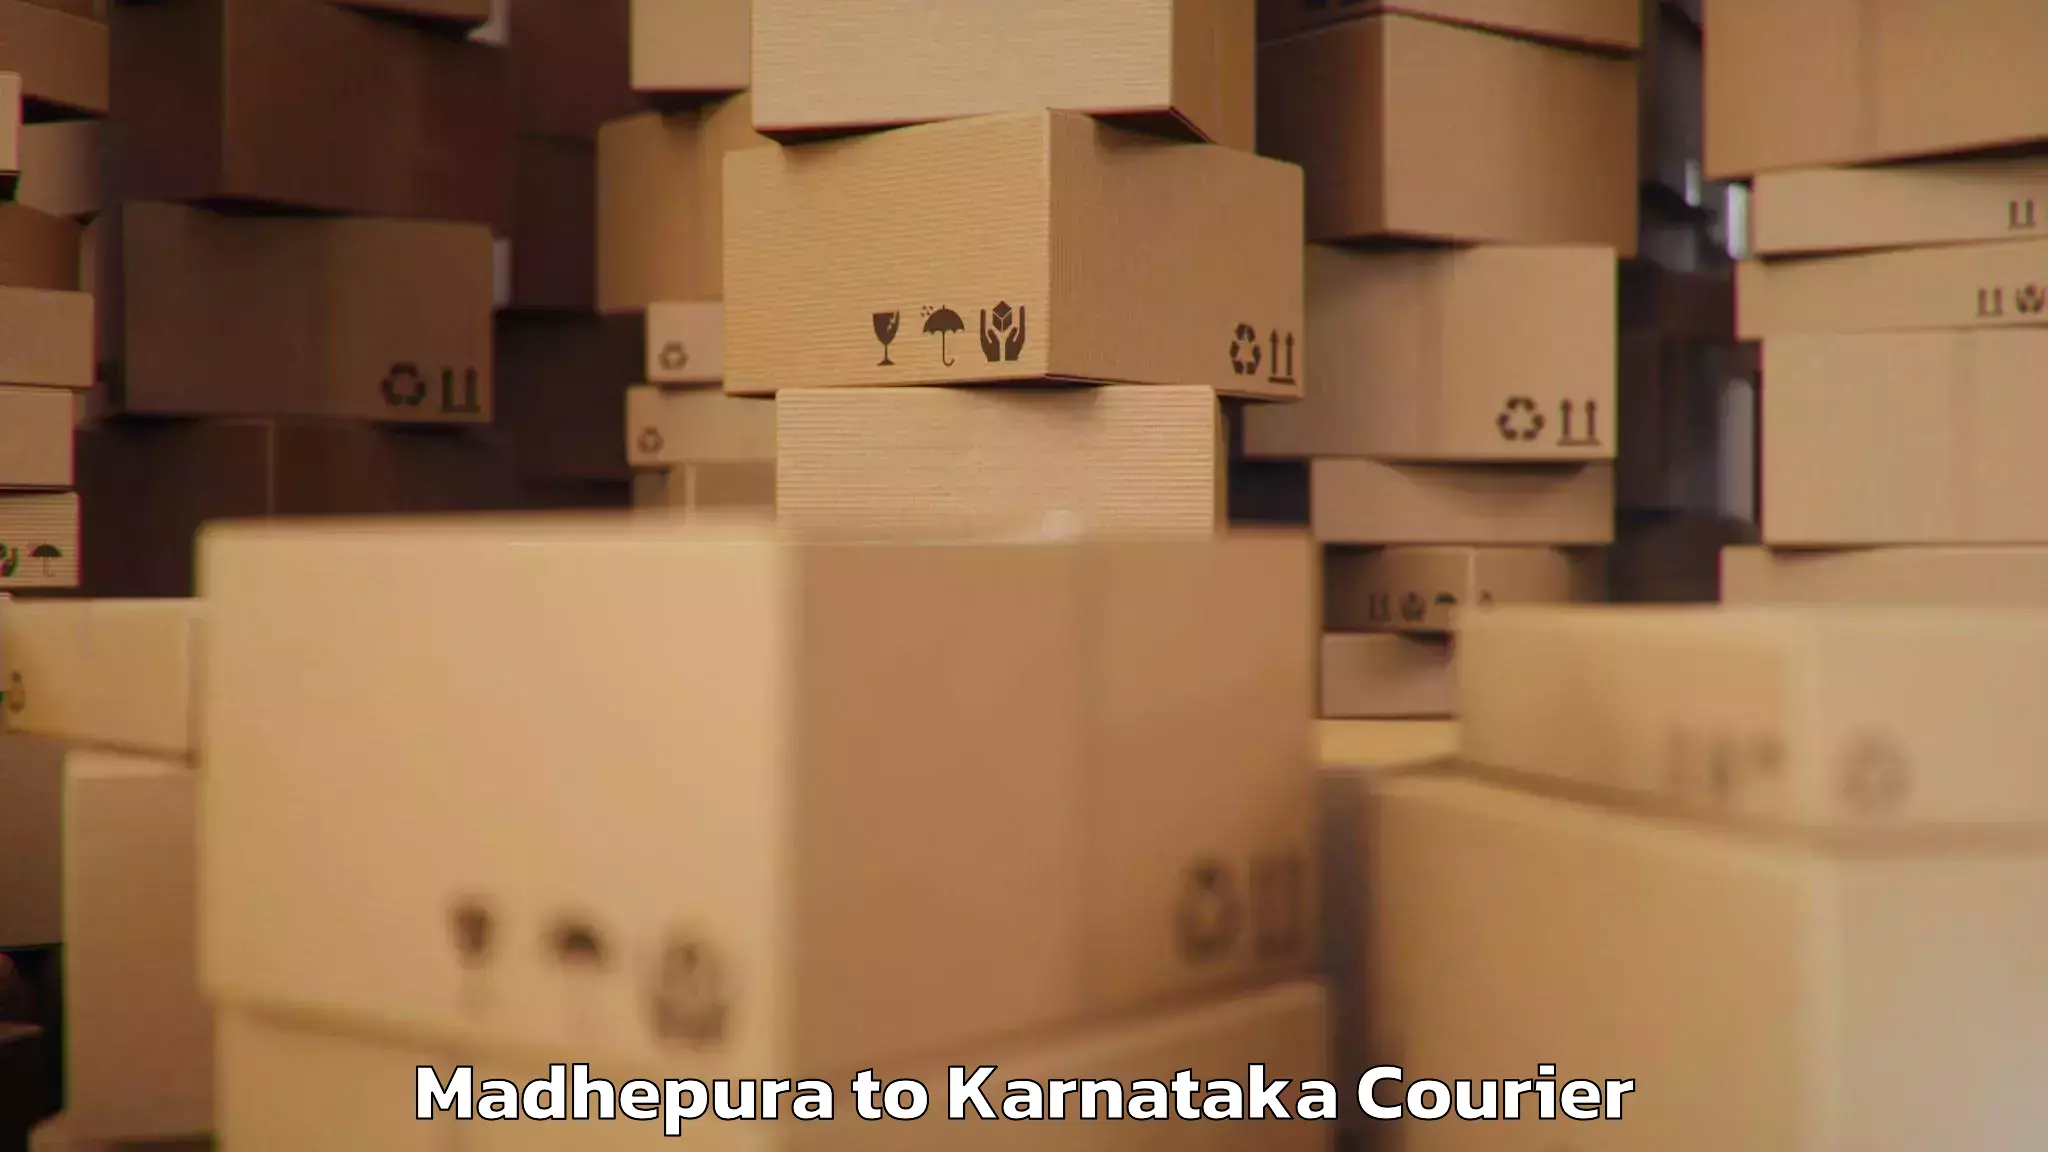 Baggage shipping advice Madhepura to Hungund